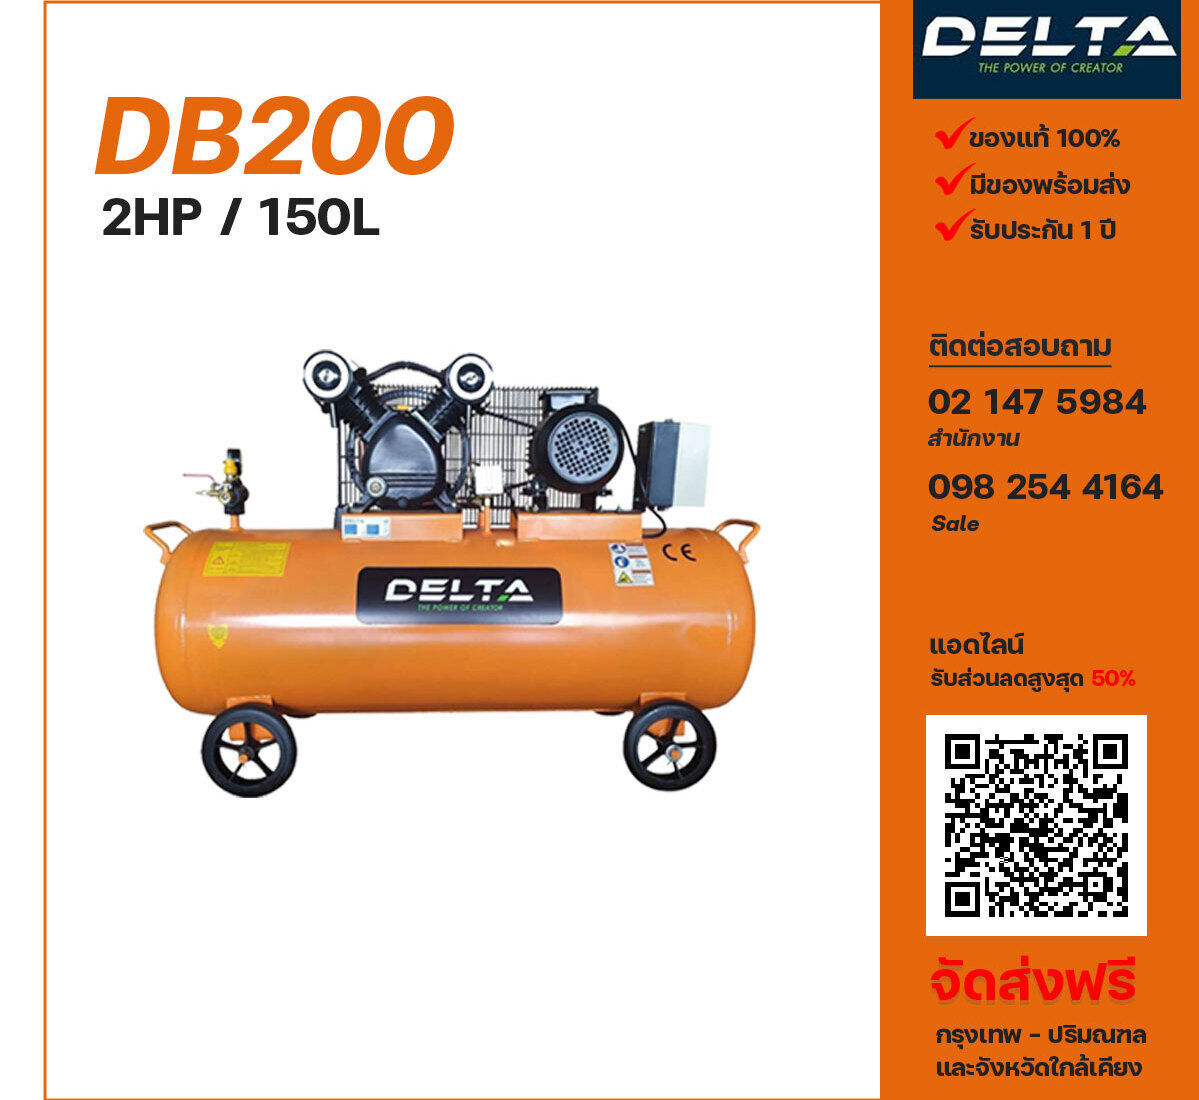 ปั๊มลมเดลต้า DELTA DB200 220V ปั๊มลมลูกสูบ ขนาด 2 สูบ 2 แรงม้า 150 ลิตร DELTA พร้อมมอเตอร์ ไฟ 220V ส่งฟรี กรุงเทพฯ-ปริมณฑล รับประกัน 1 ปี